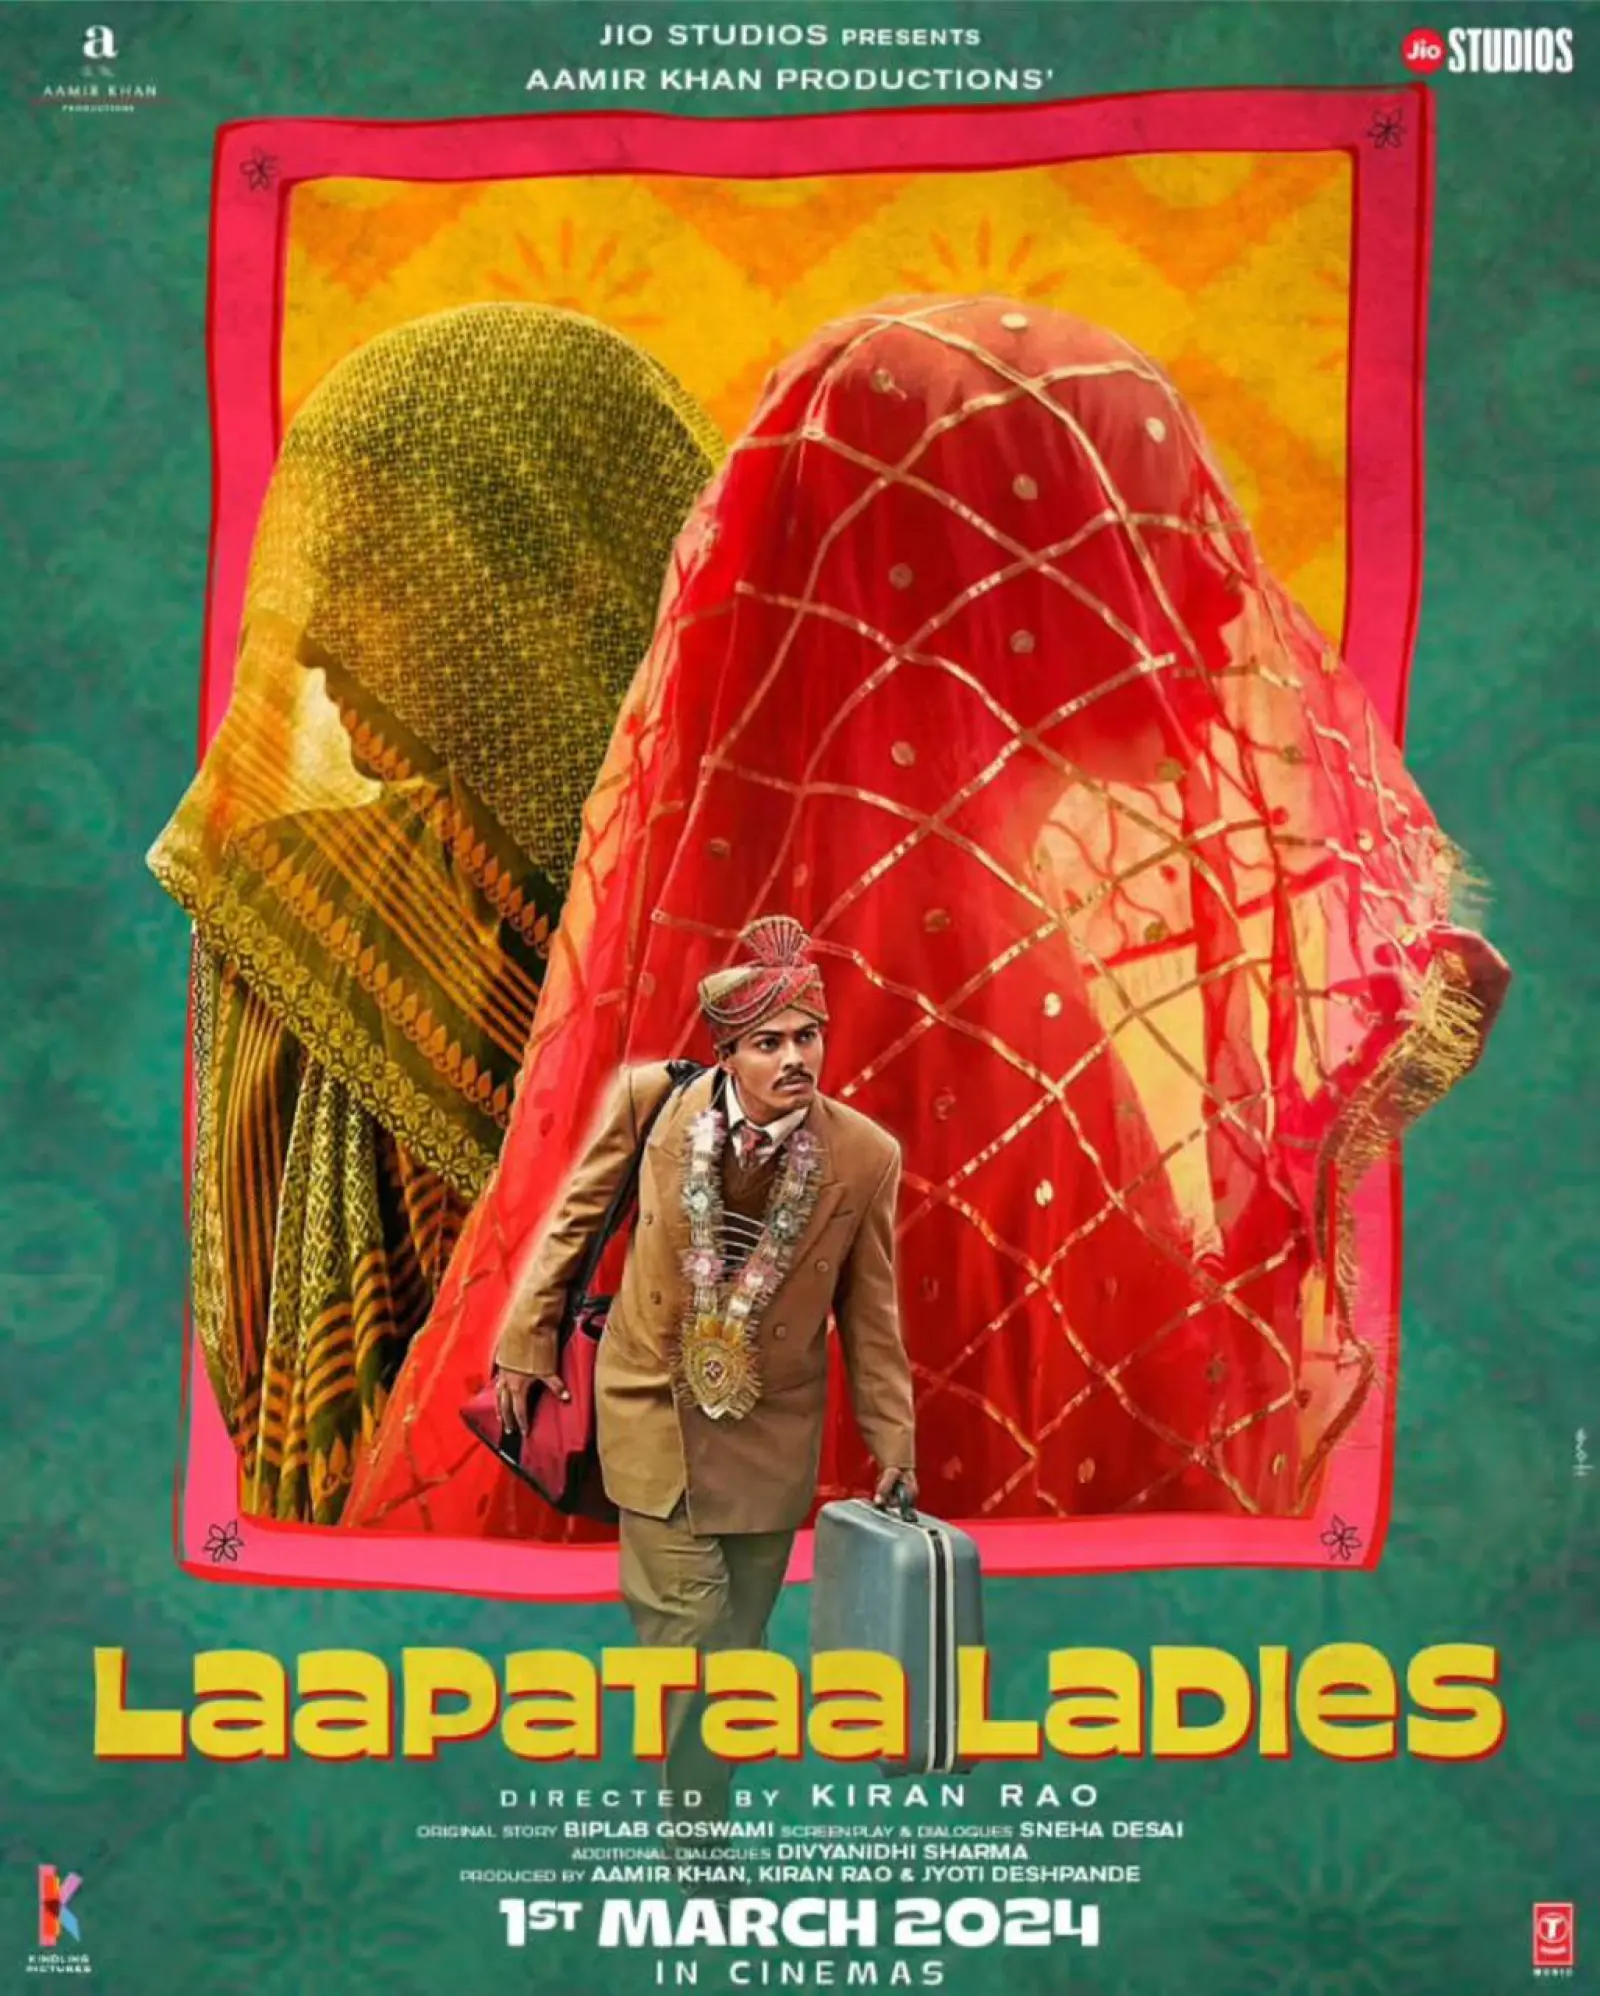 सिद्धार्थ आनंद की फिल्म 'फाइटर' की रिलीज के साथ थिएटर्स में नजर आएगा किरण राव द्वारा निर्देशित फिल्म 'लापता लेडीज' का कॉमेडी से भरपूर ट्रेलर